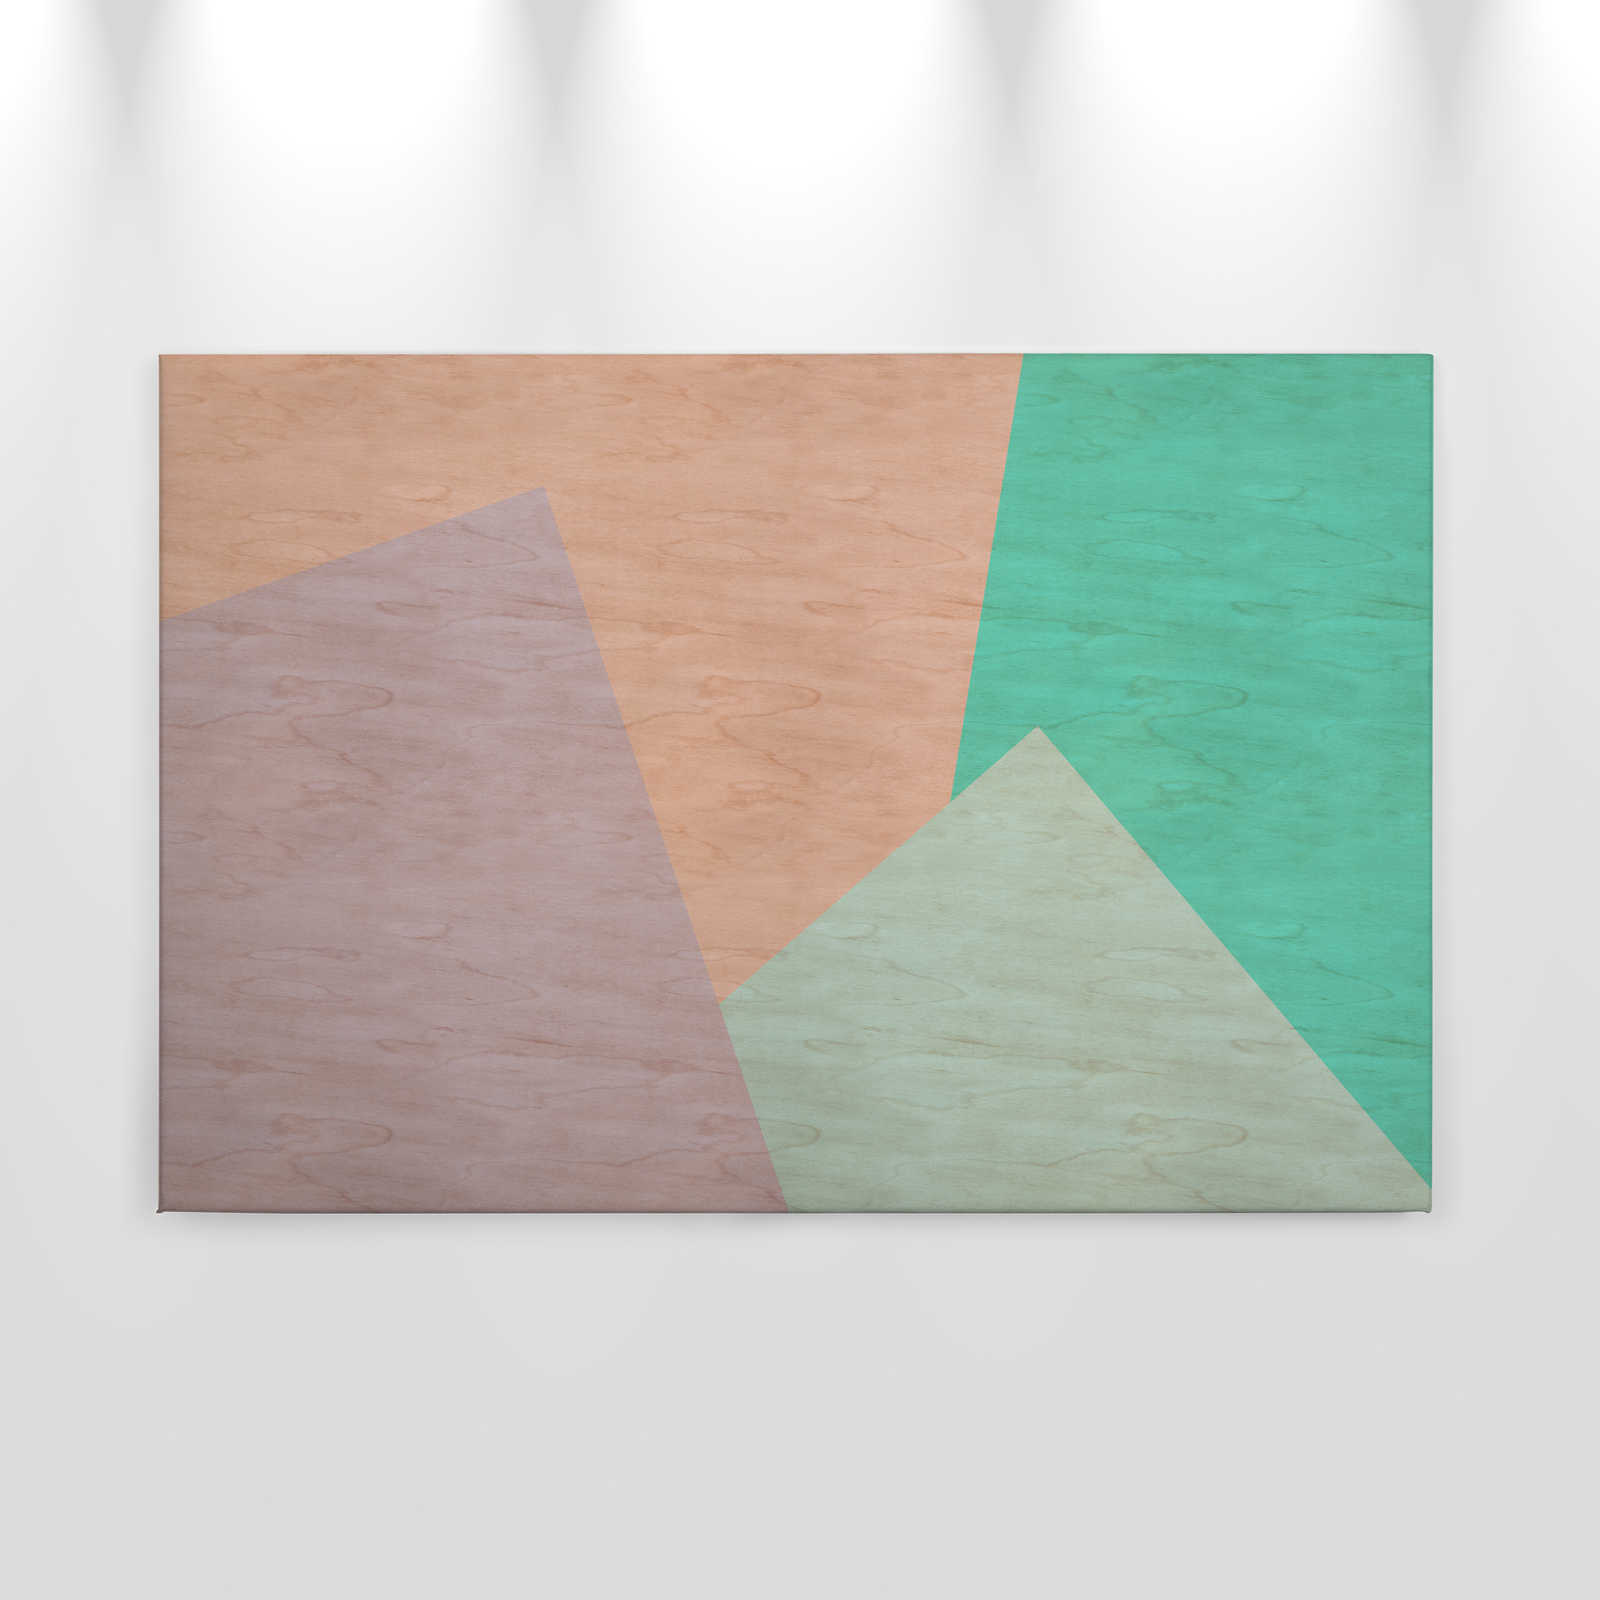             Inaly 1 - Tableau abstrait coloré sur toile en structure contreplaquée - 0,90 m x 0,60 m
        